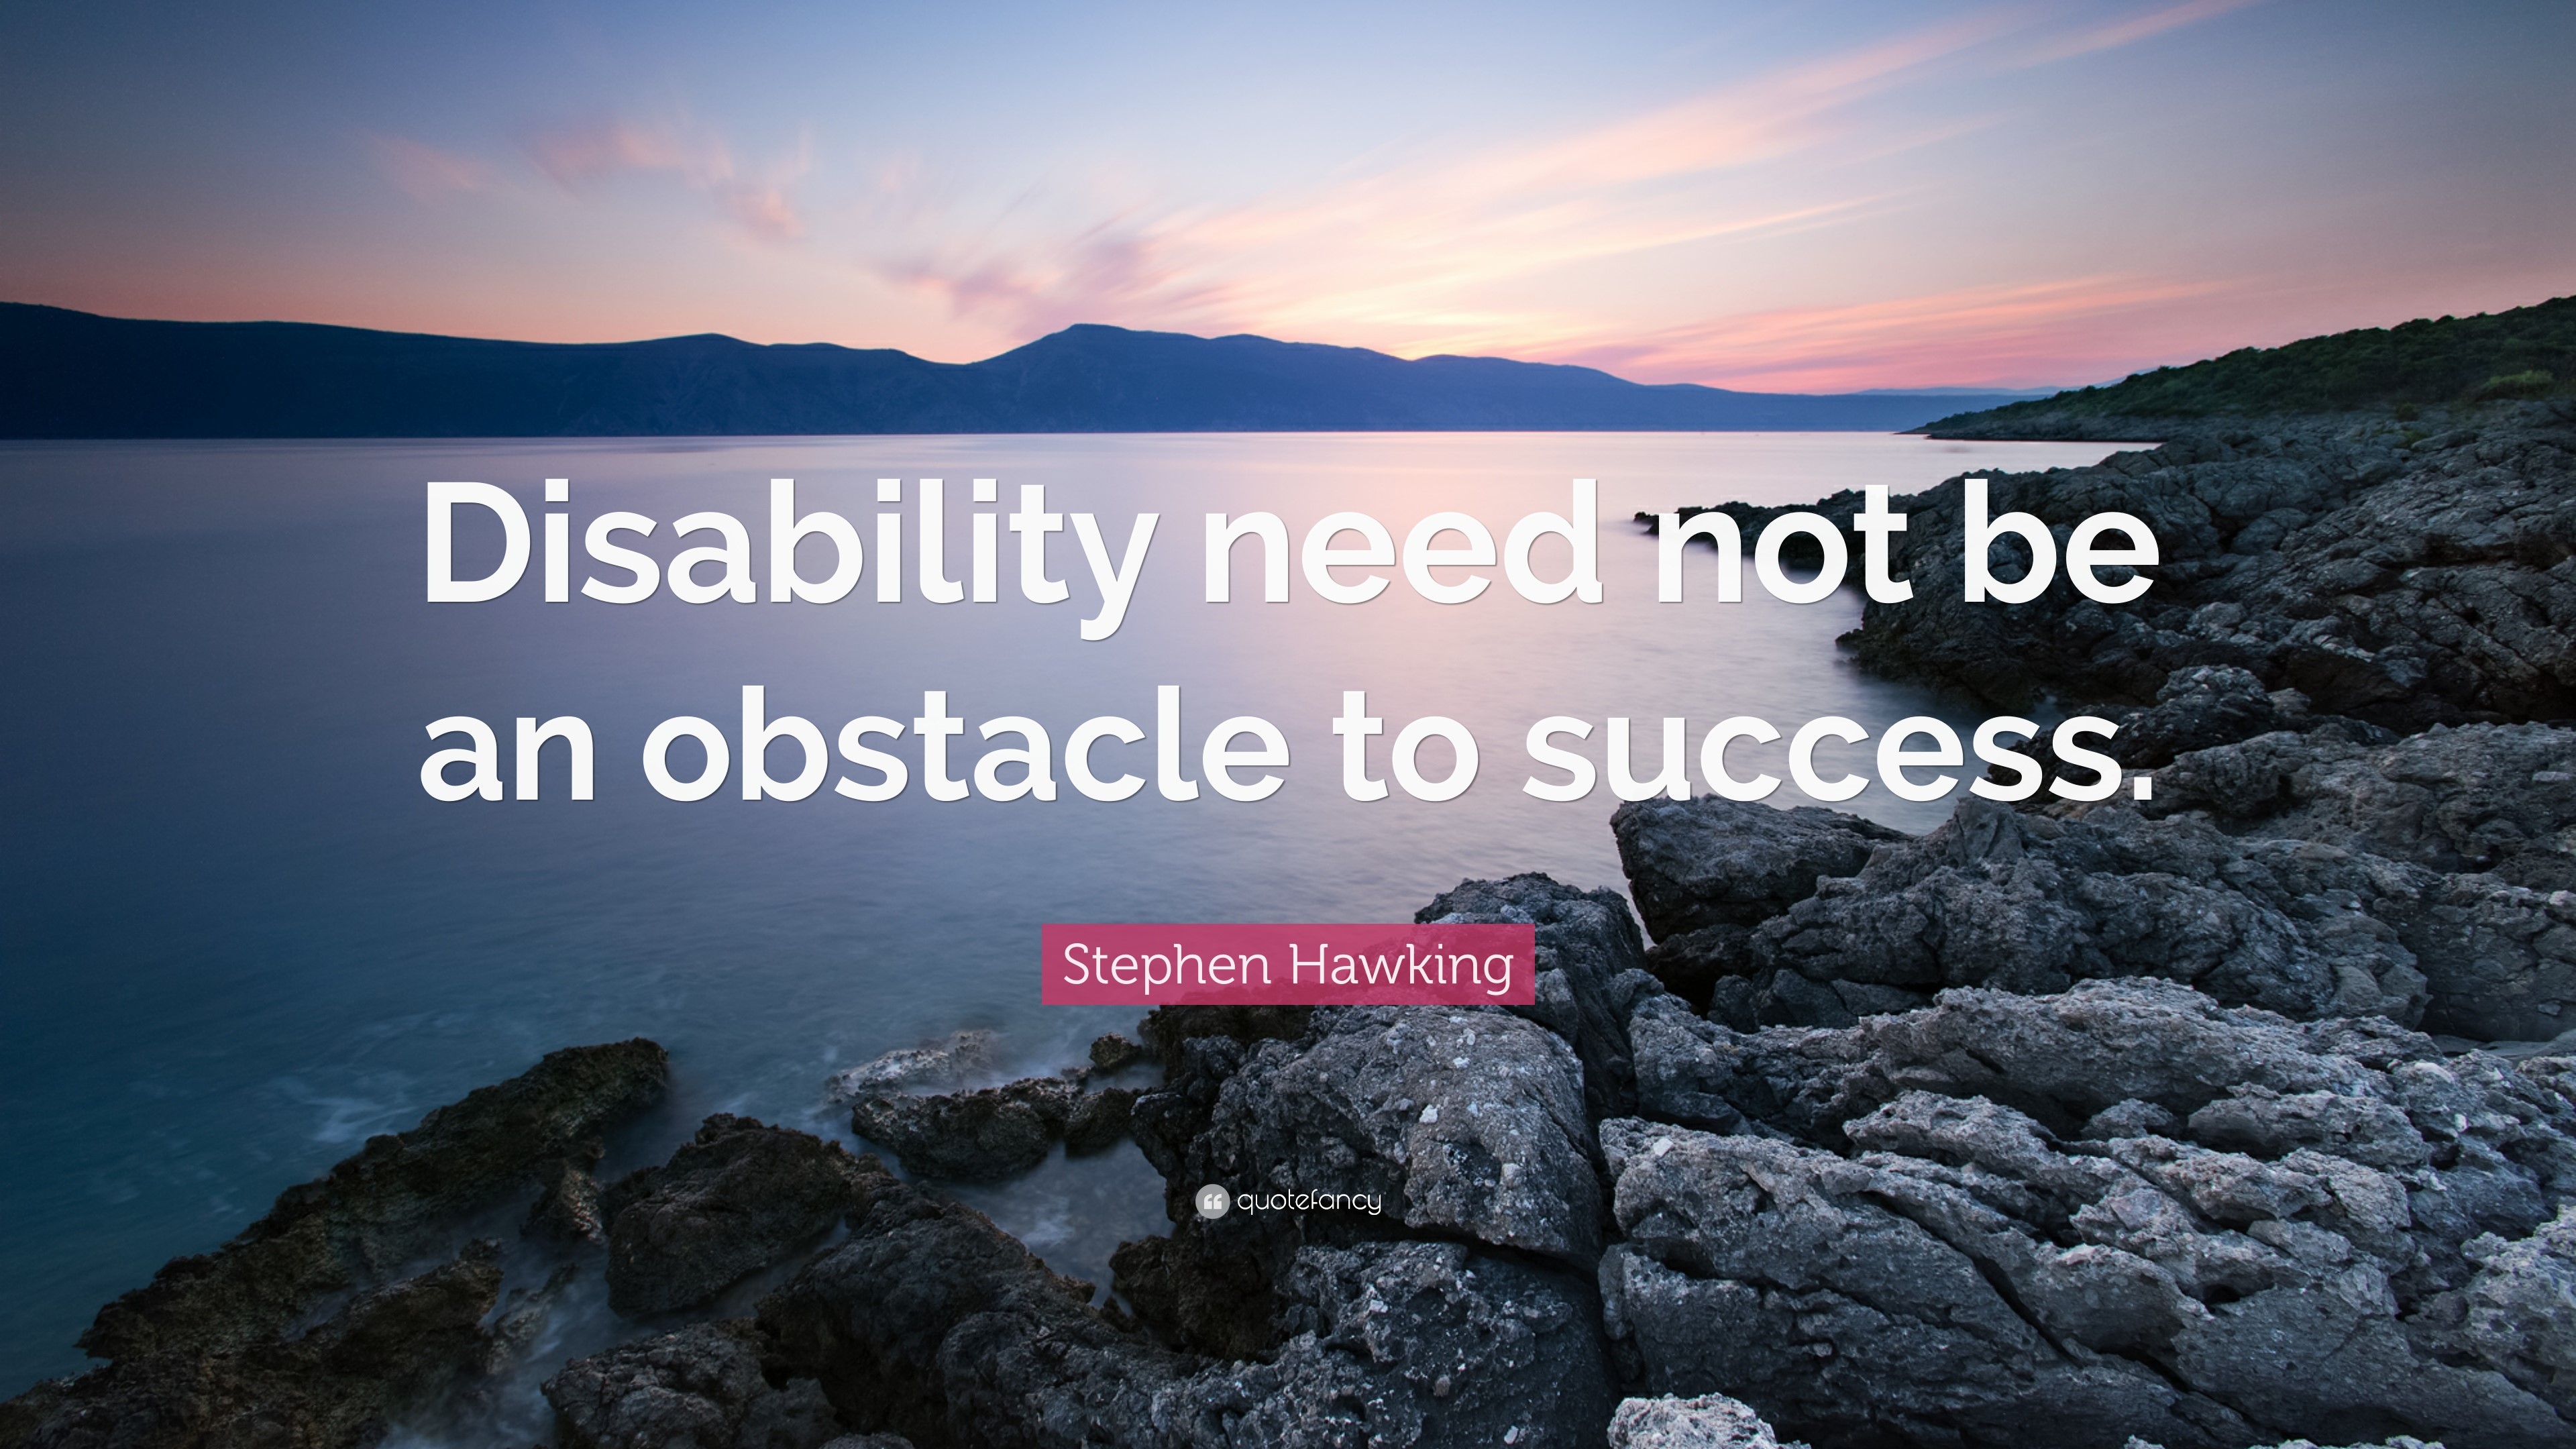 Steven Hawkings Quote.jpg